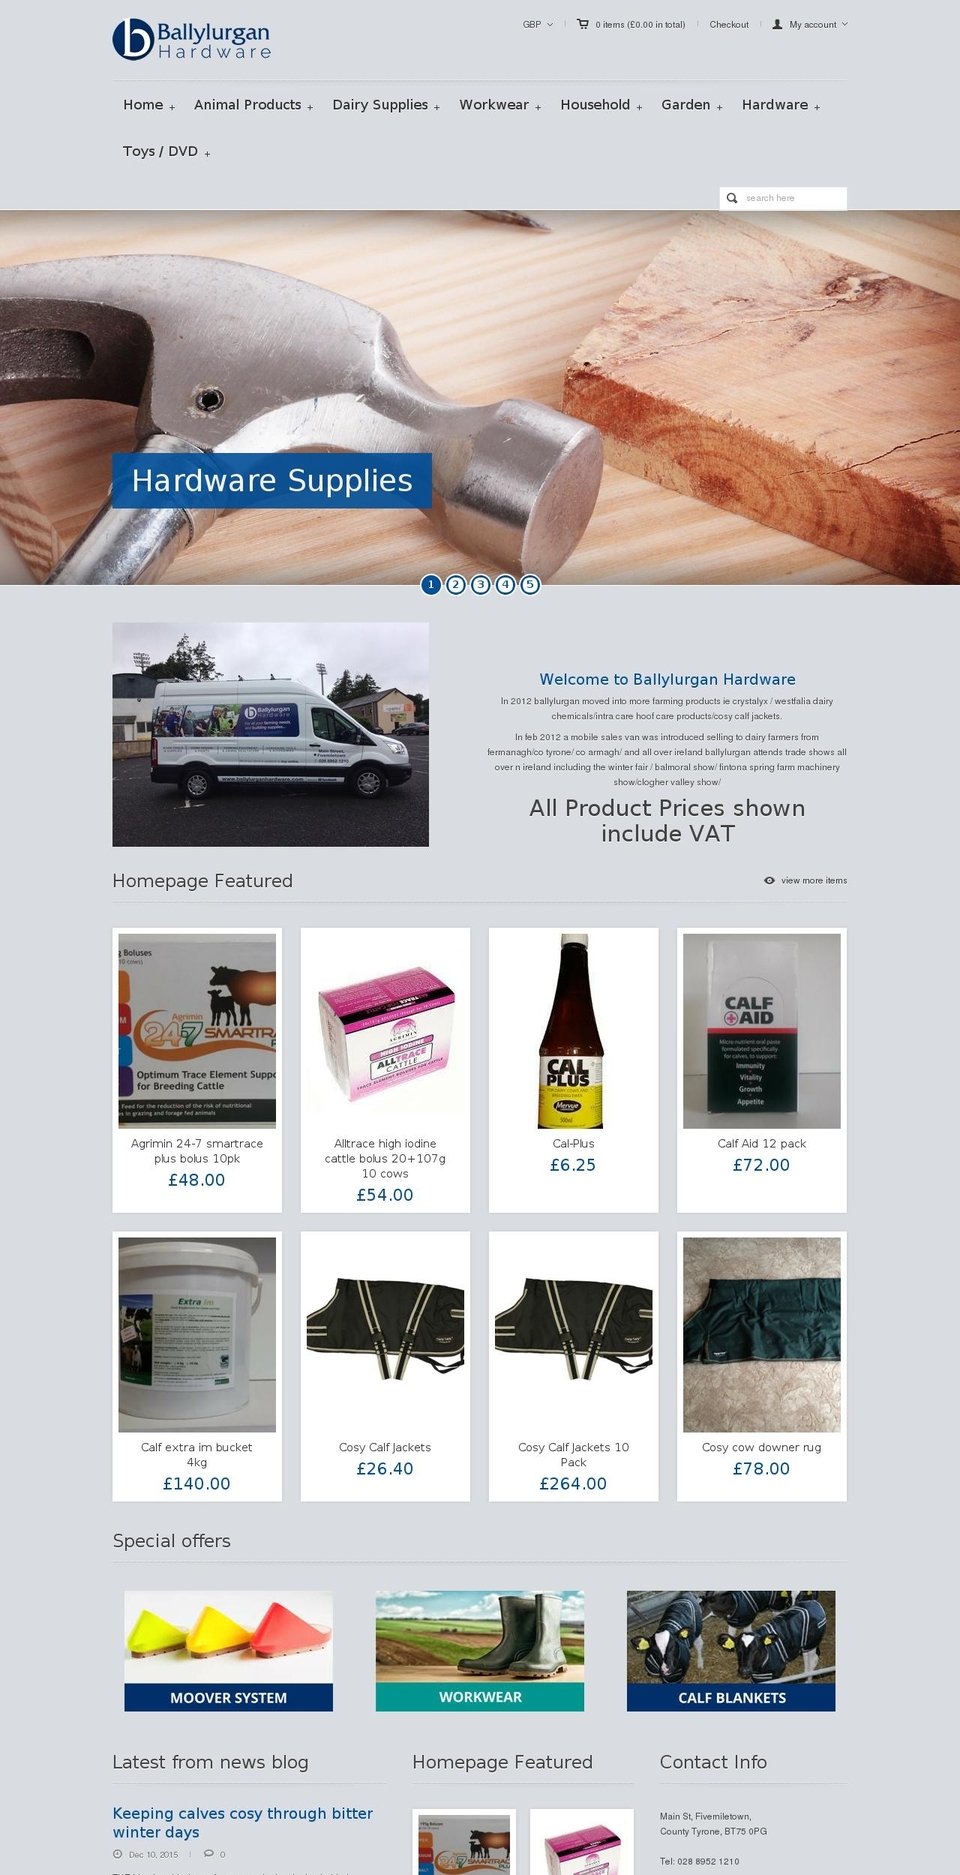 pandora Shopify theme site example ballylurganhardware.com